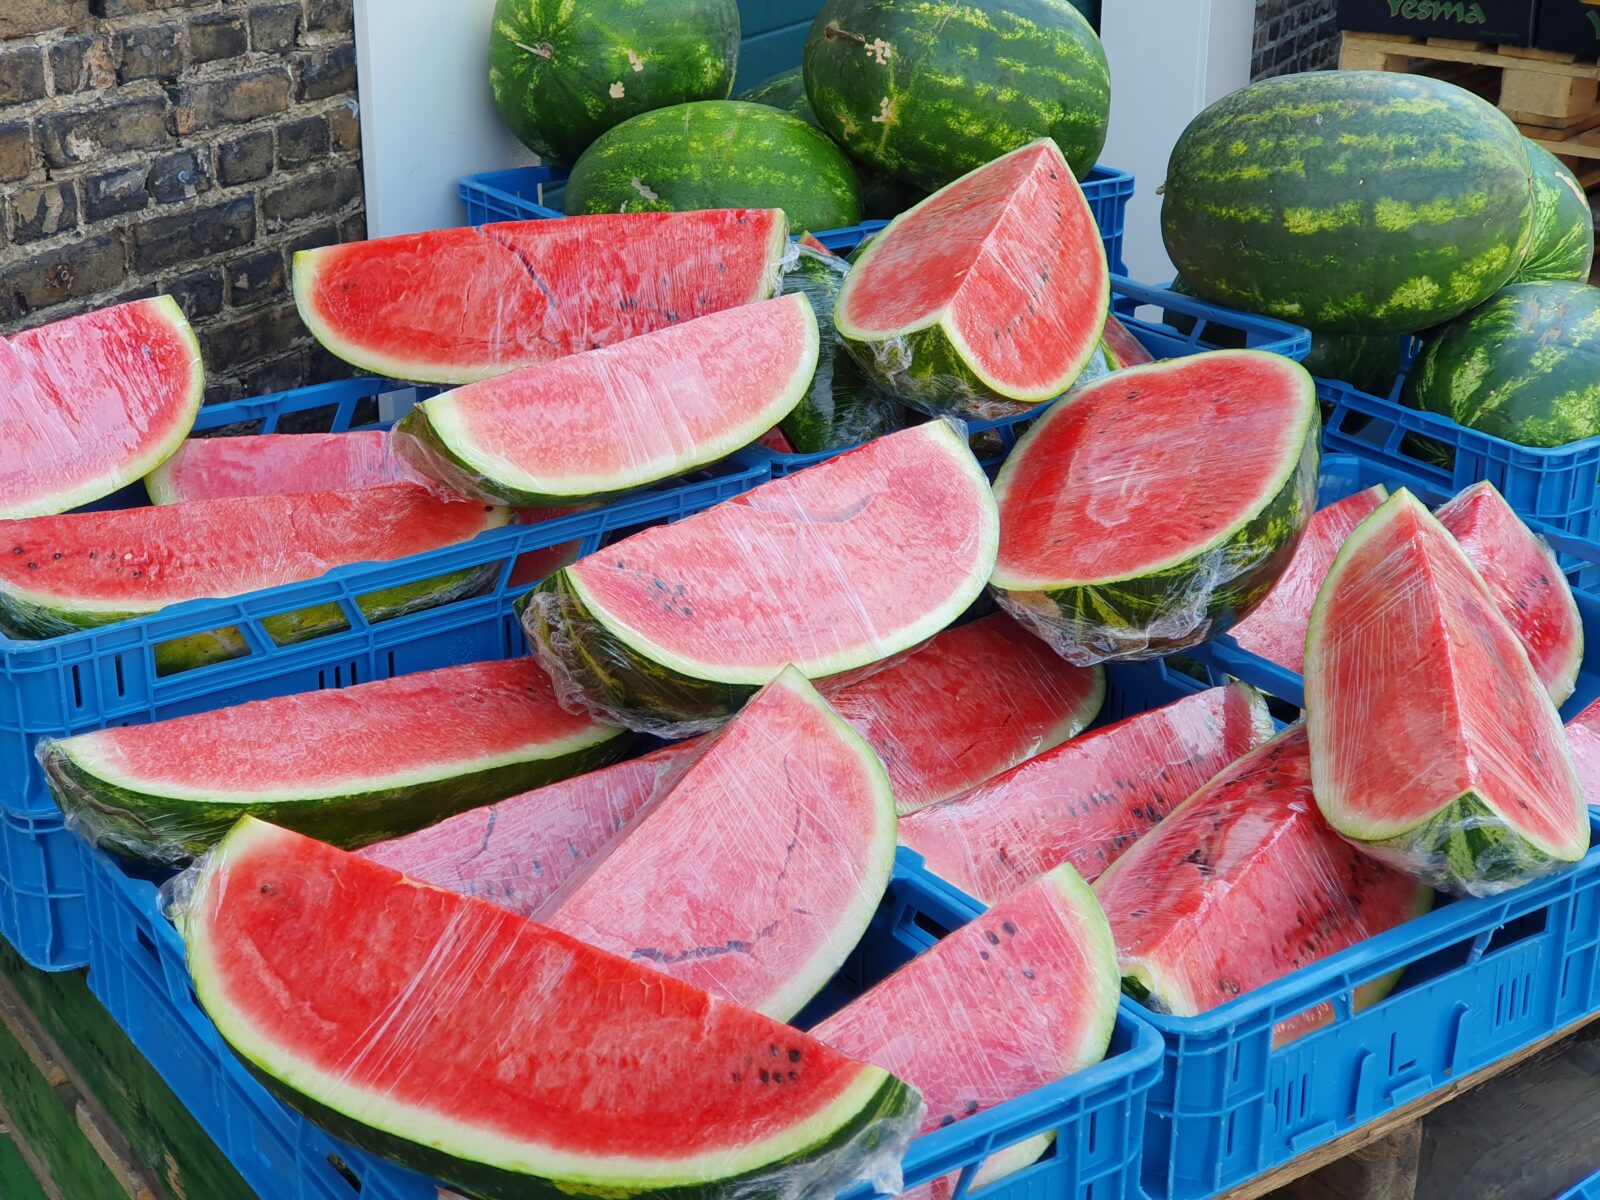 Watermeloen vers van't mes 20210603 102901 scaled